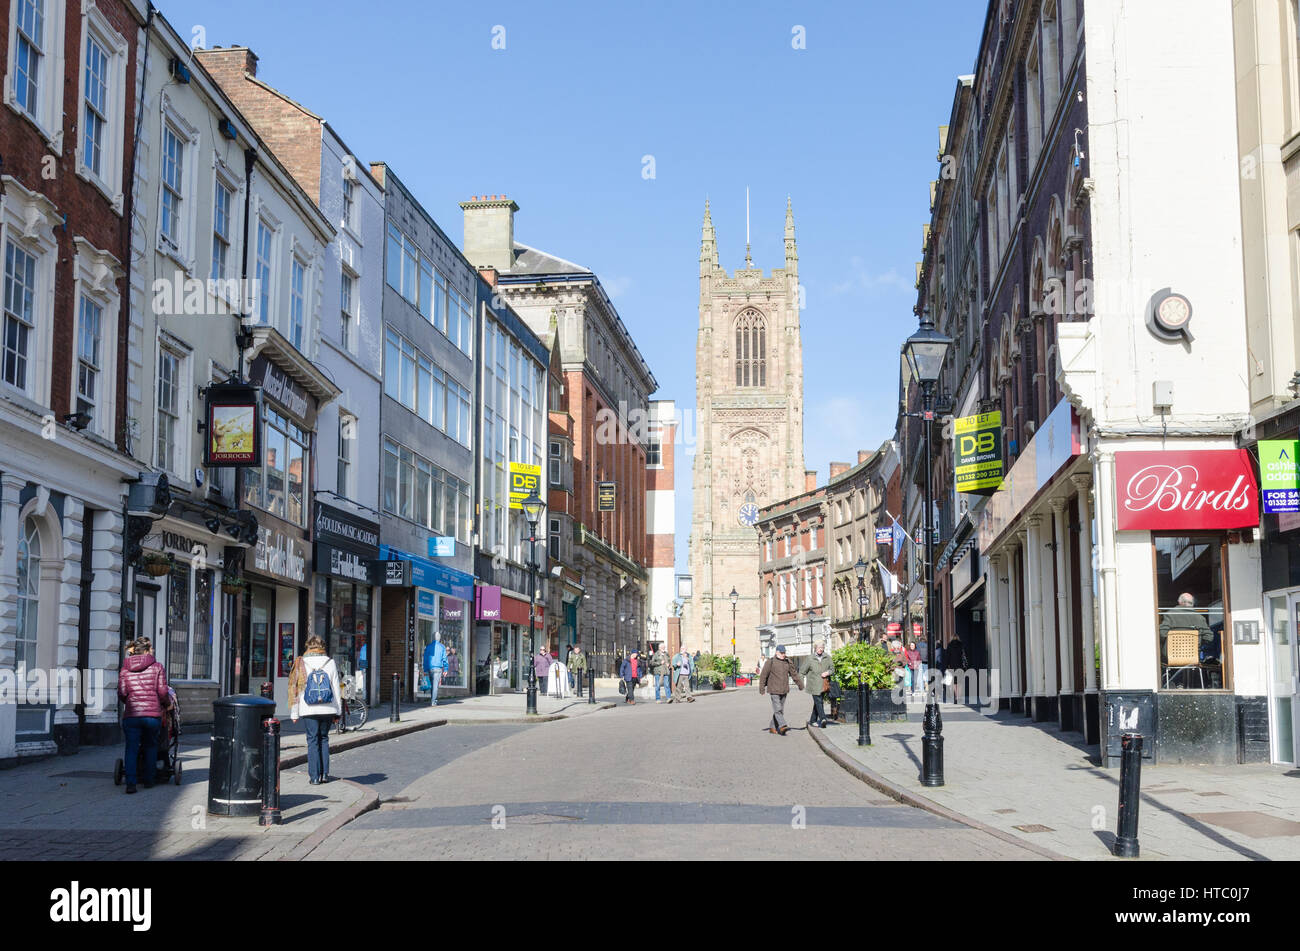 Porte de fer dans le quartier de la cathédrale de Derby est une rue avec des boutiques indépendantes et des bars et restaurants Banque D'Images